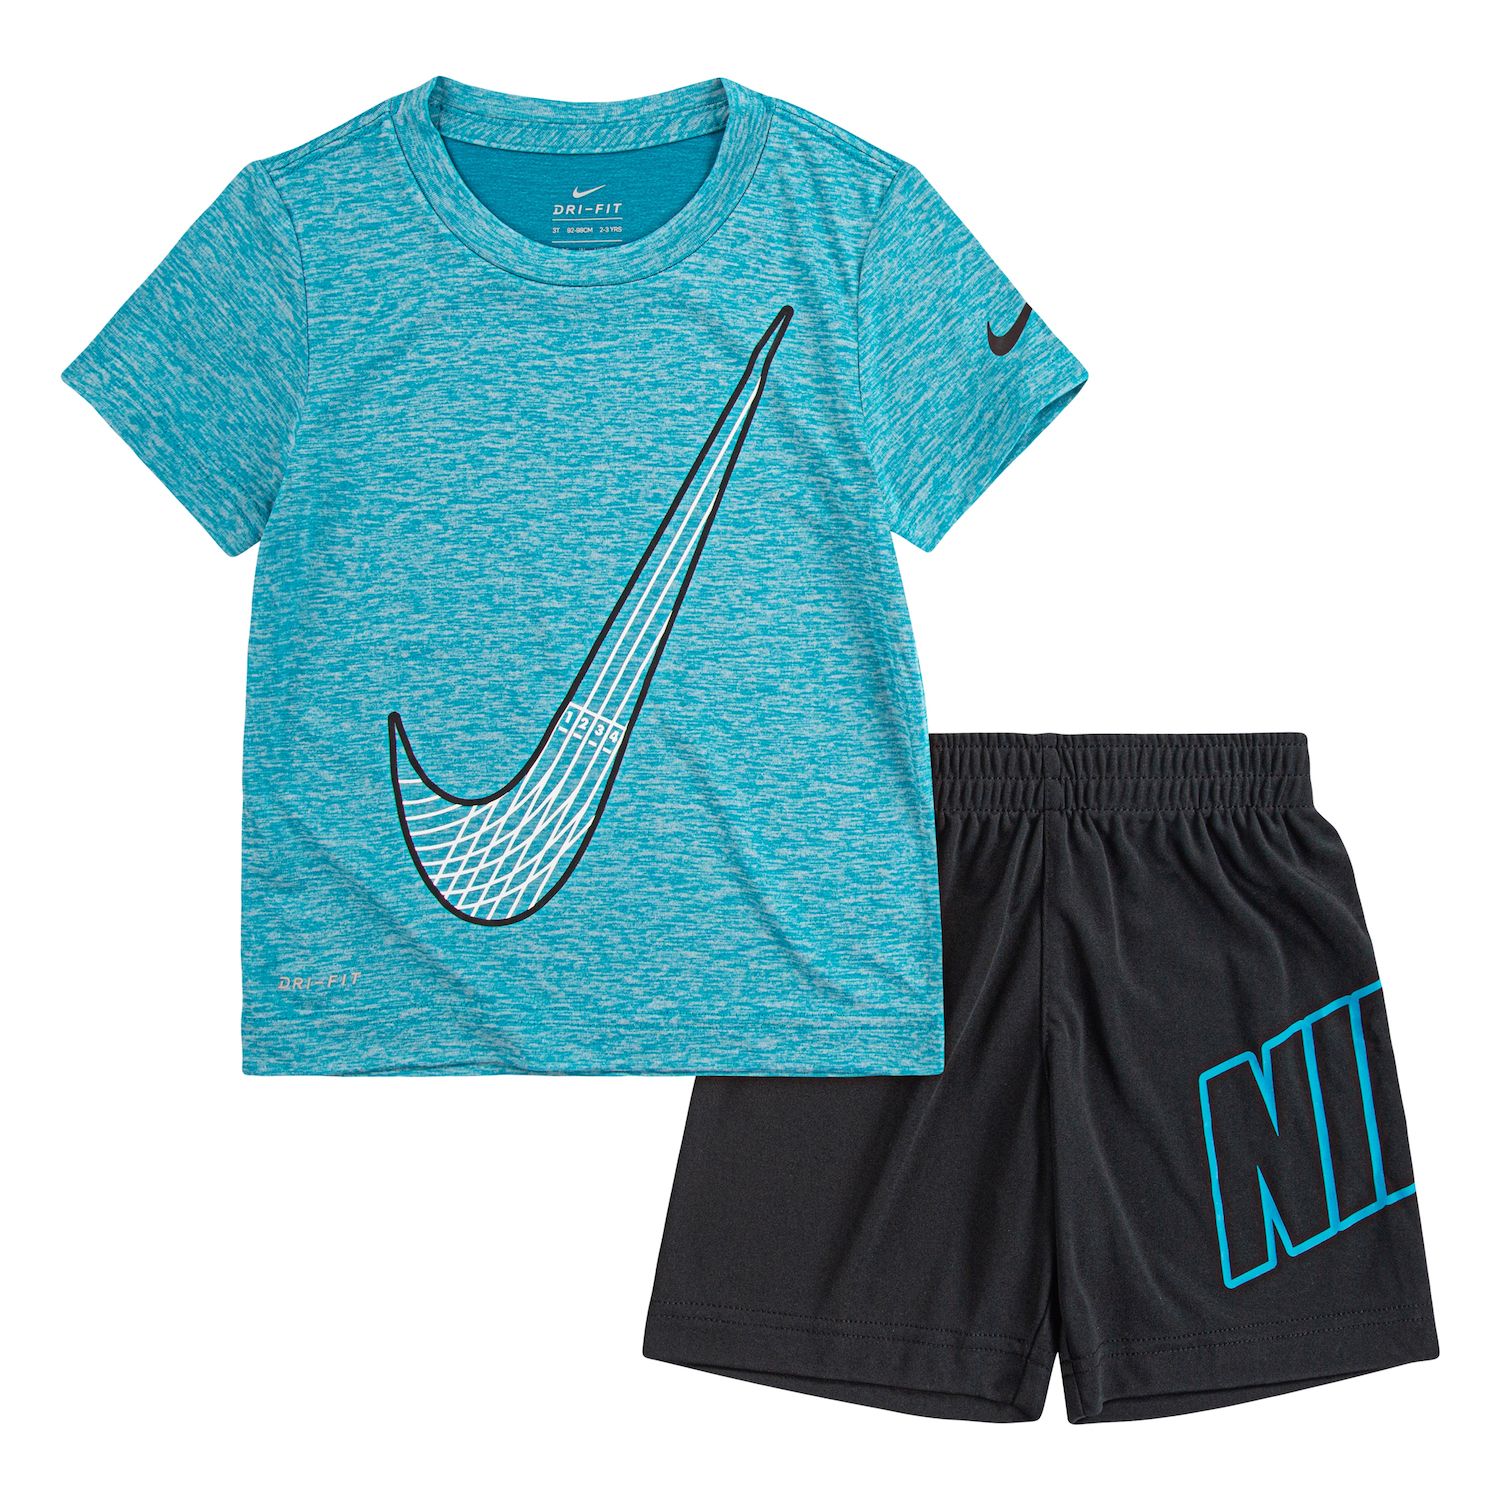 Boy's Nike Toddler Clothing: Nike T 